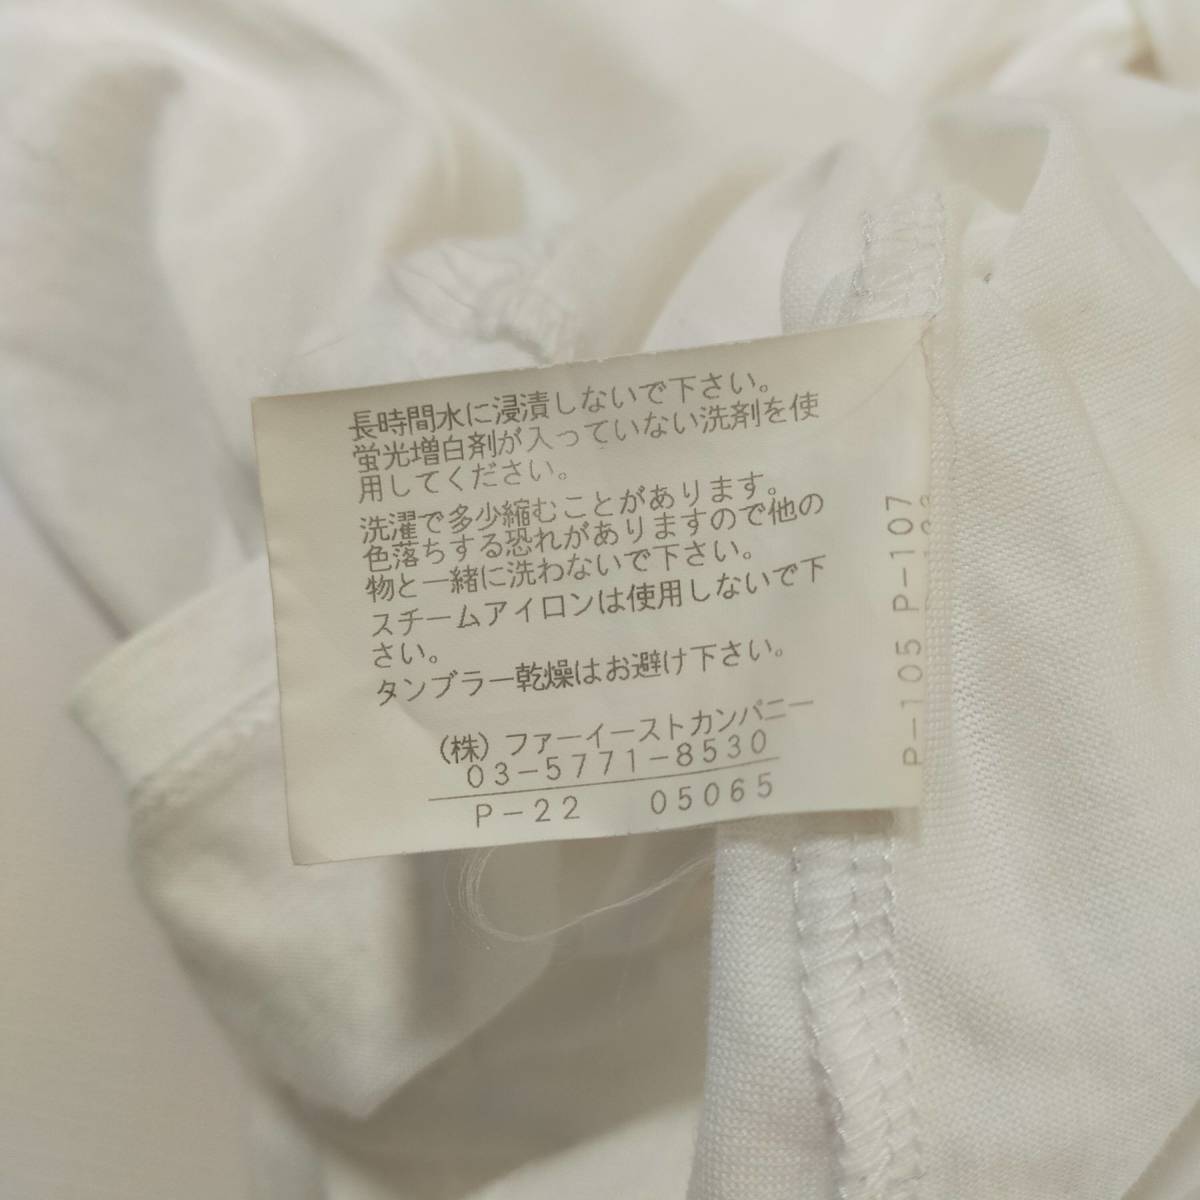 アナイ ANAI カットソー サイズ38 M ホワイト 白 日本製 ボウタイブラウス プルオーバー 半袖 透け感 パフスリーブ シンプル 春 1906